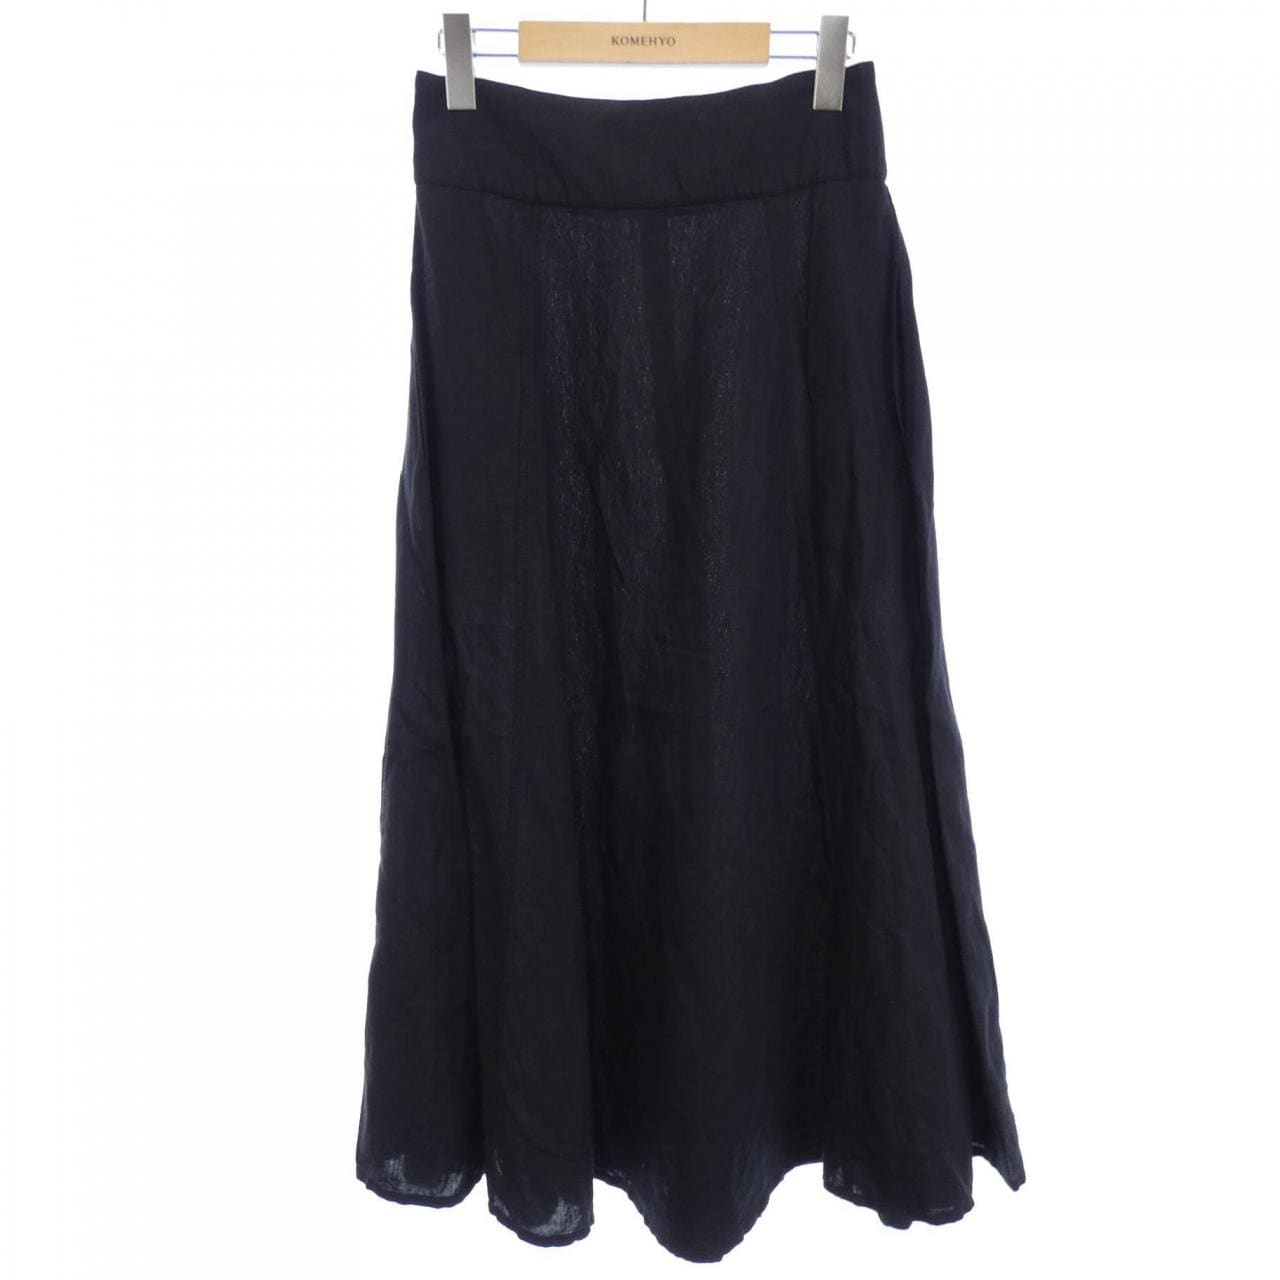 SHINZONE Skirt